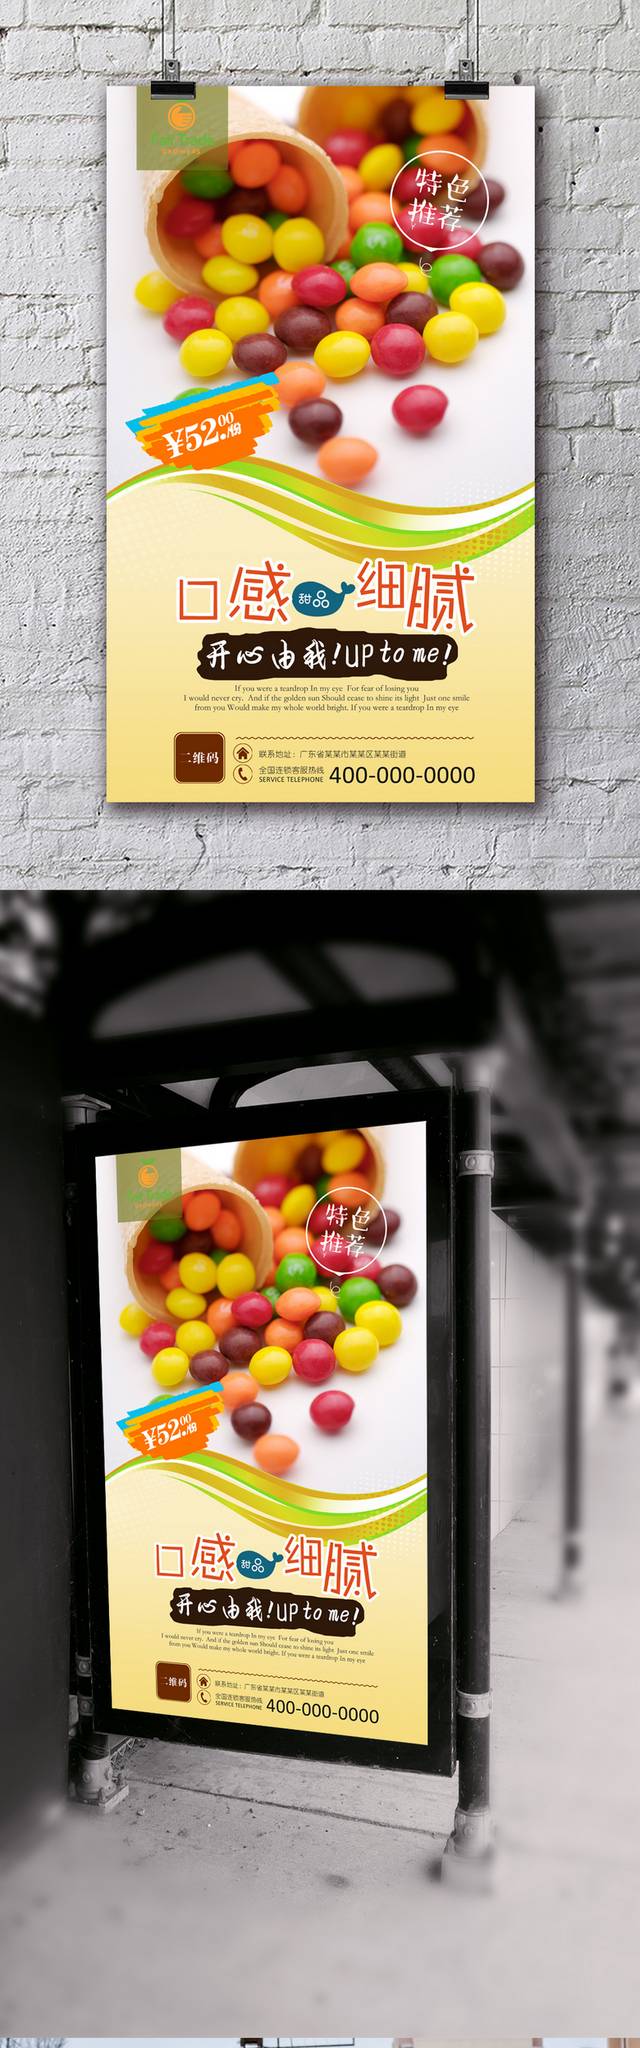 美味糖果促销海报模板psd下载